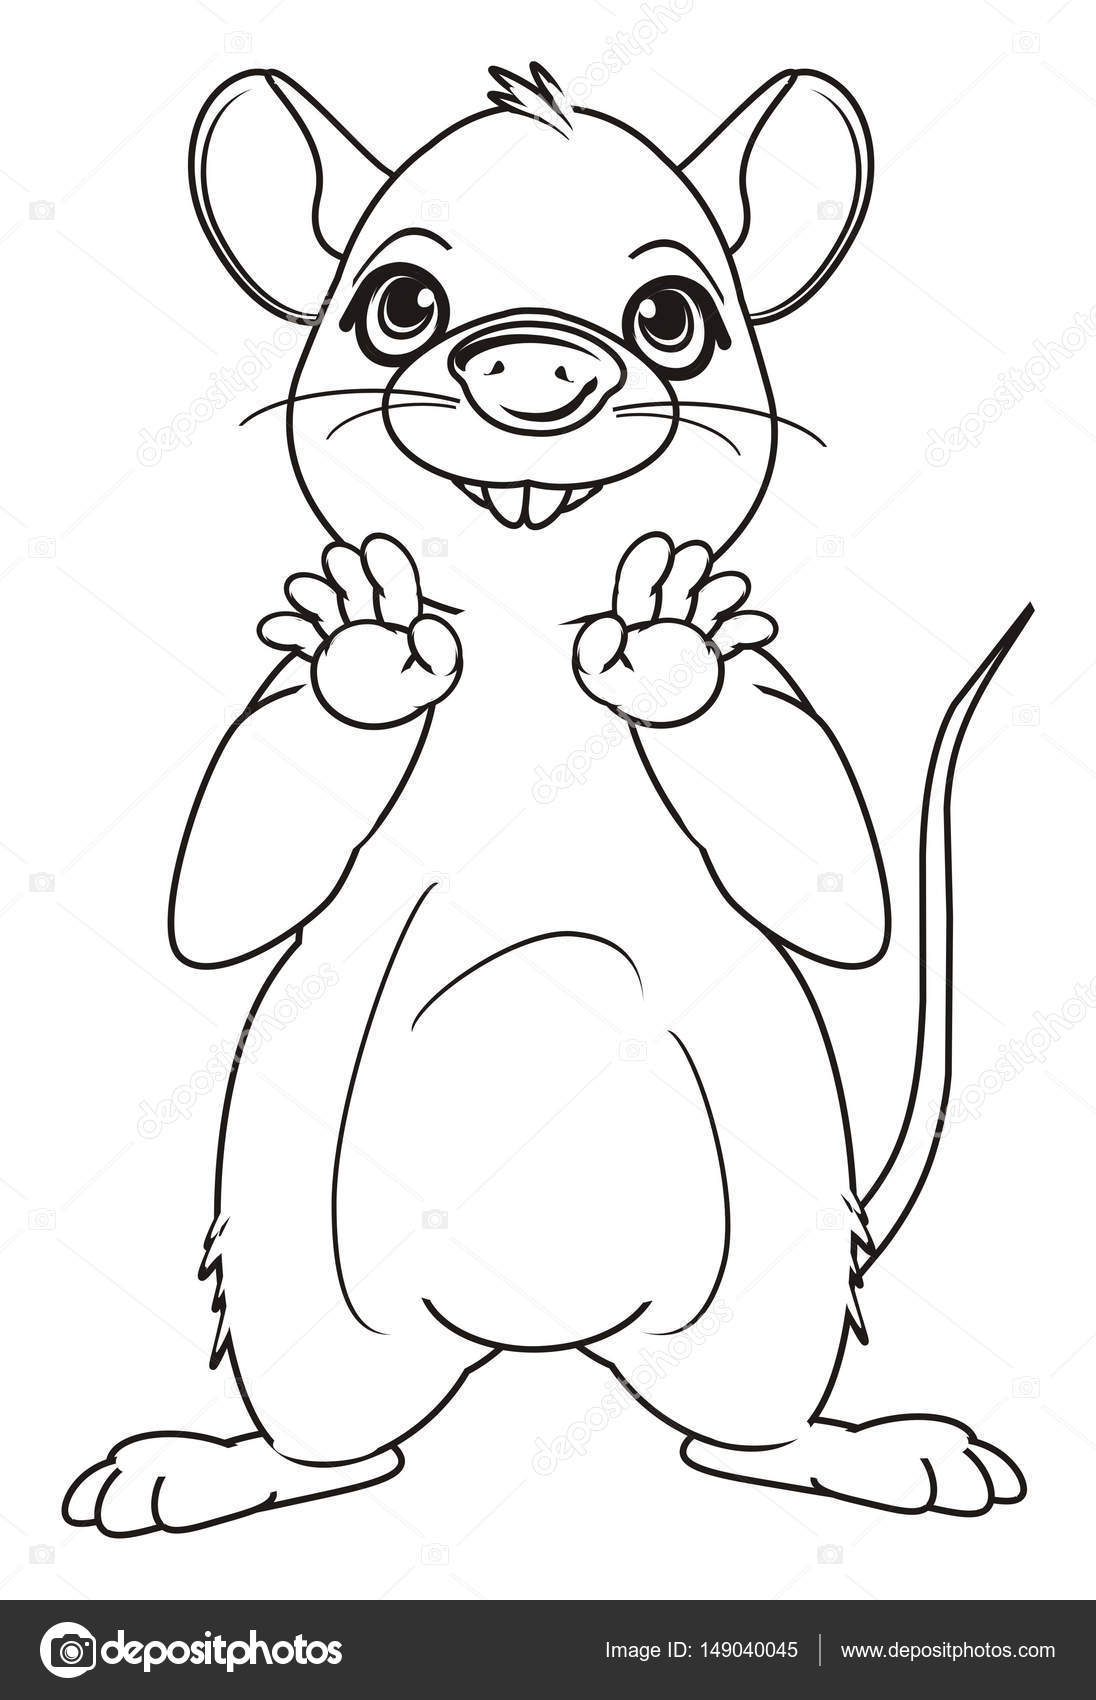 Cute Rat Drawing at GetDrawings | Free download